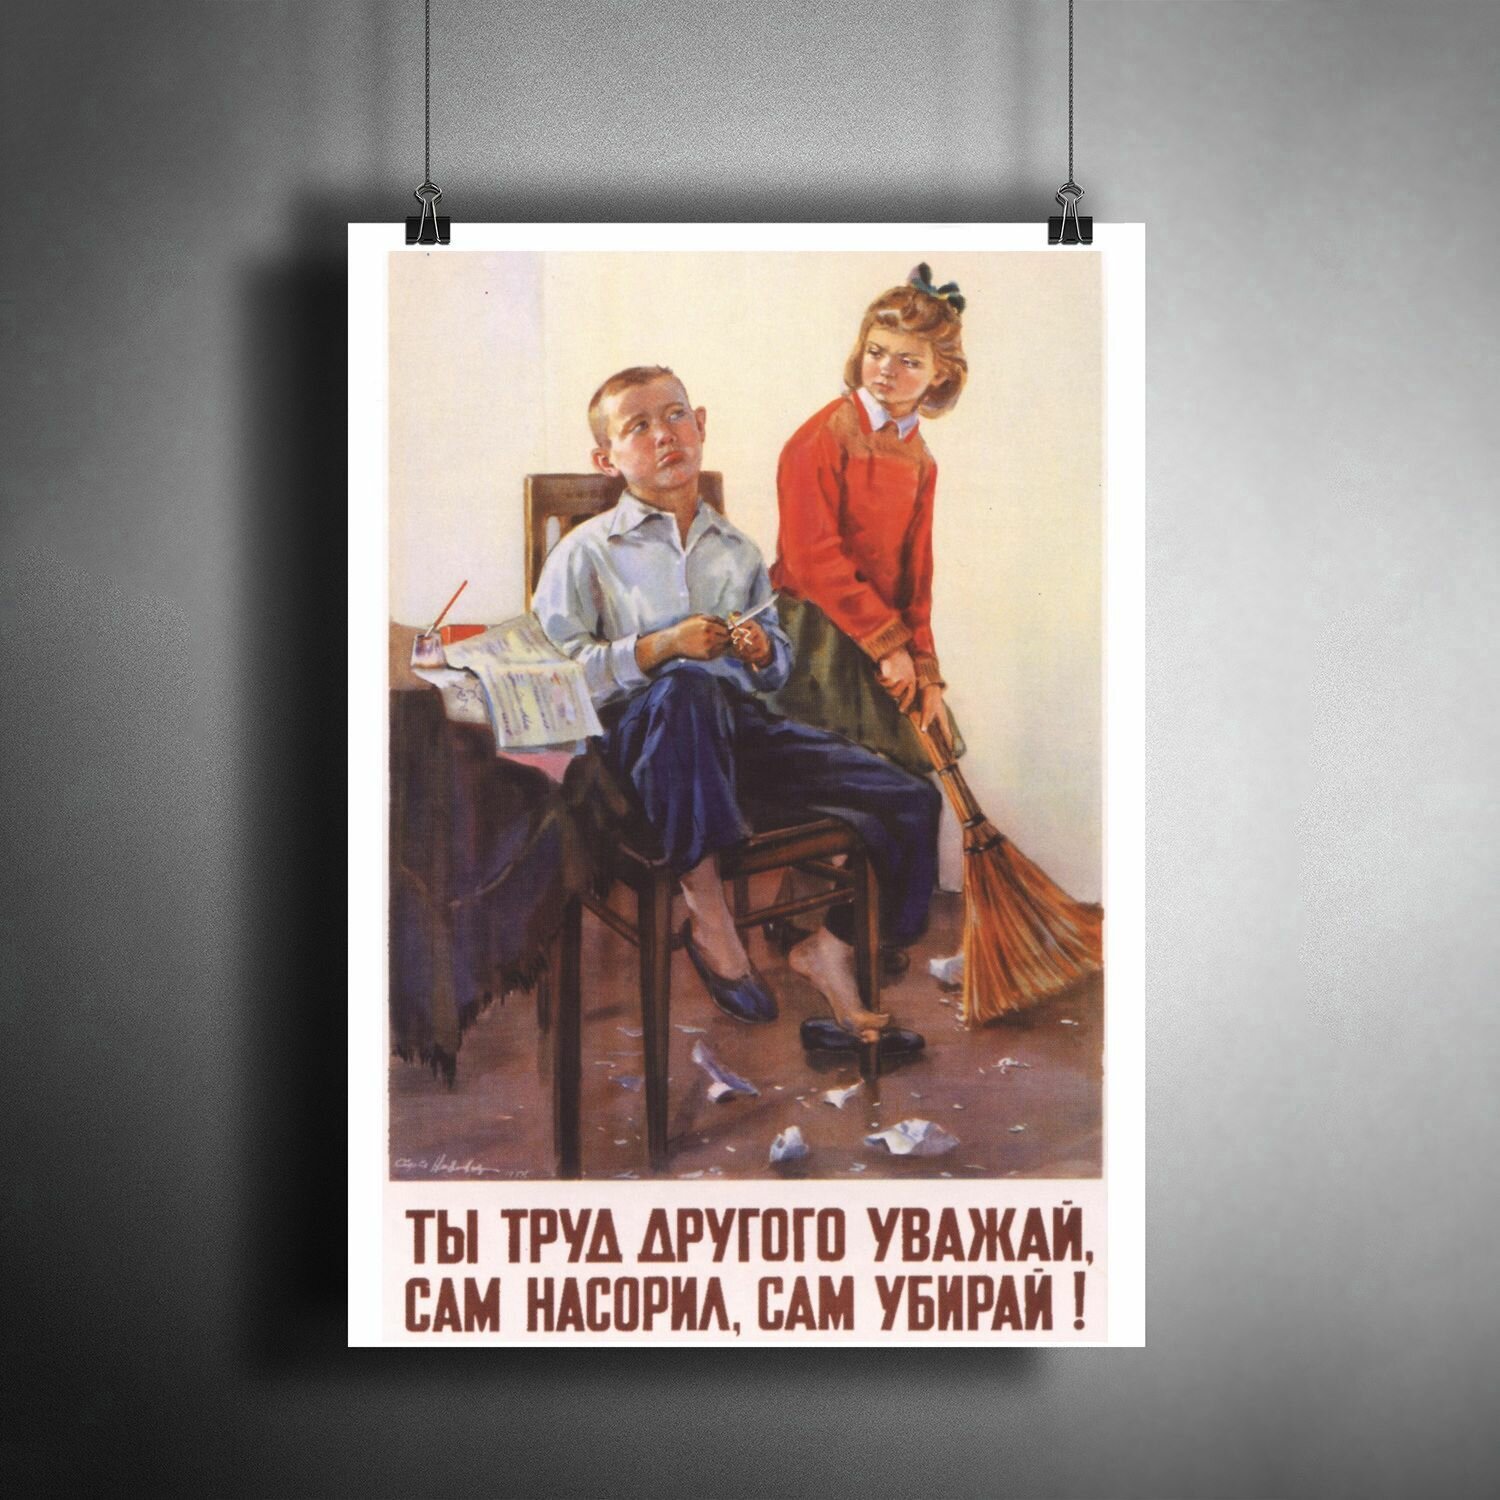 Постер плакат для интерьера "Советский плакат: Ты труд другого уважай! СССР" / Декор дома, офиса, комнаты, квартиры, детской A3 (297 x 420 мм)